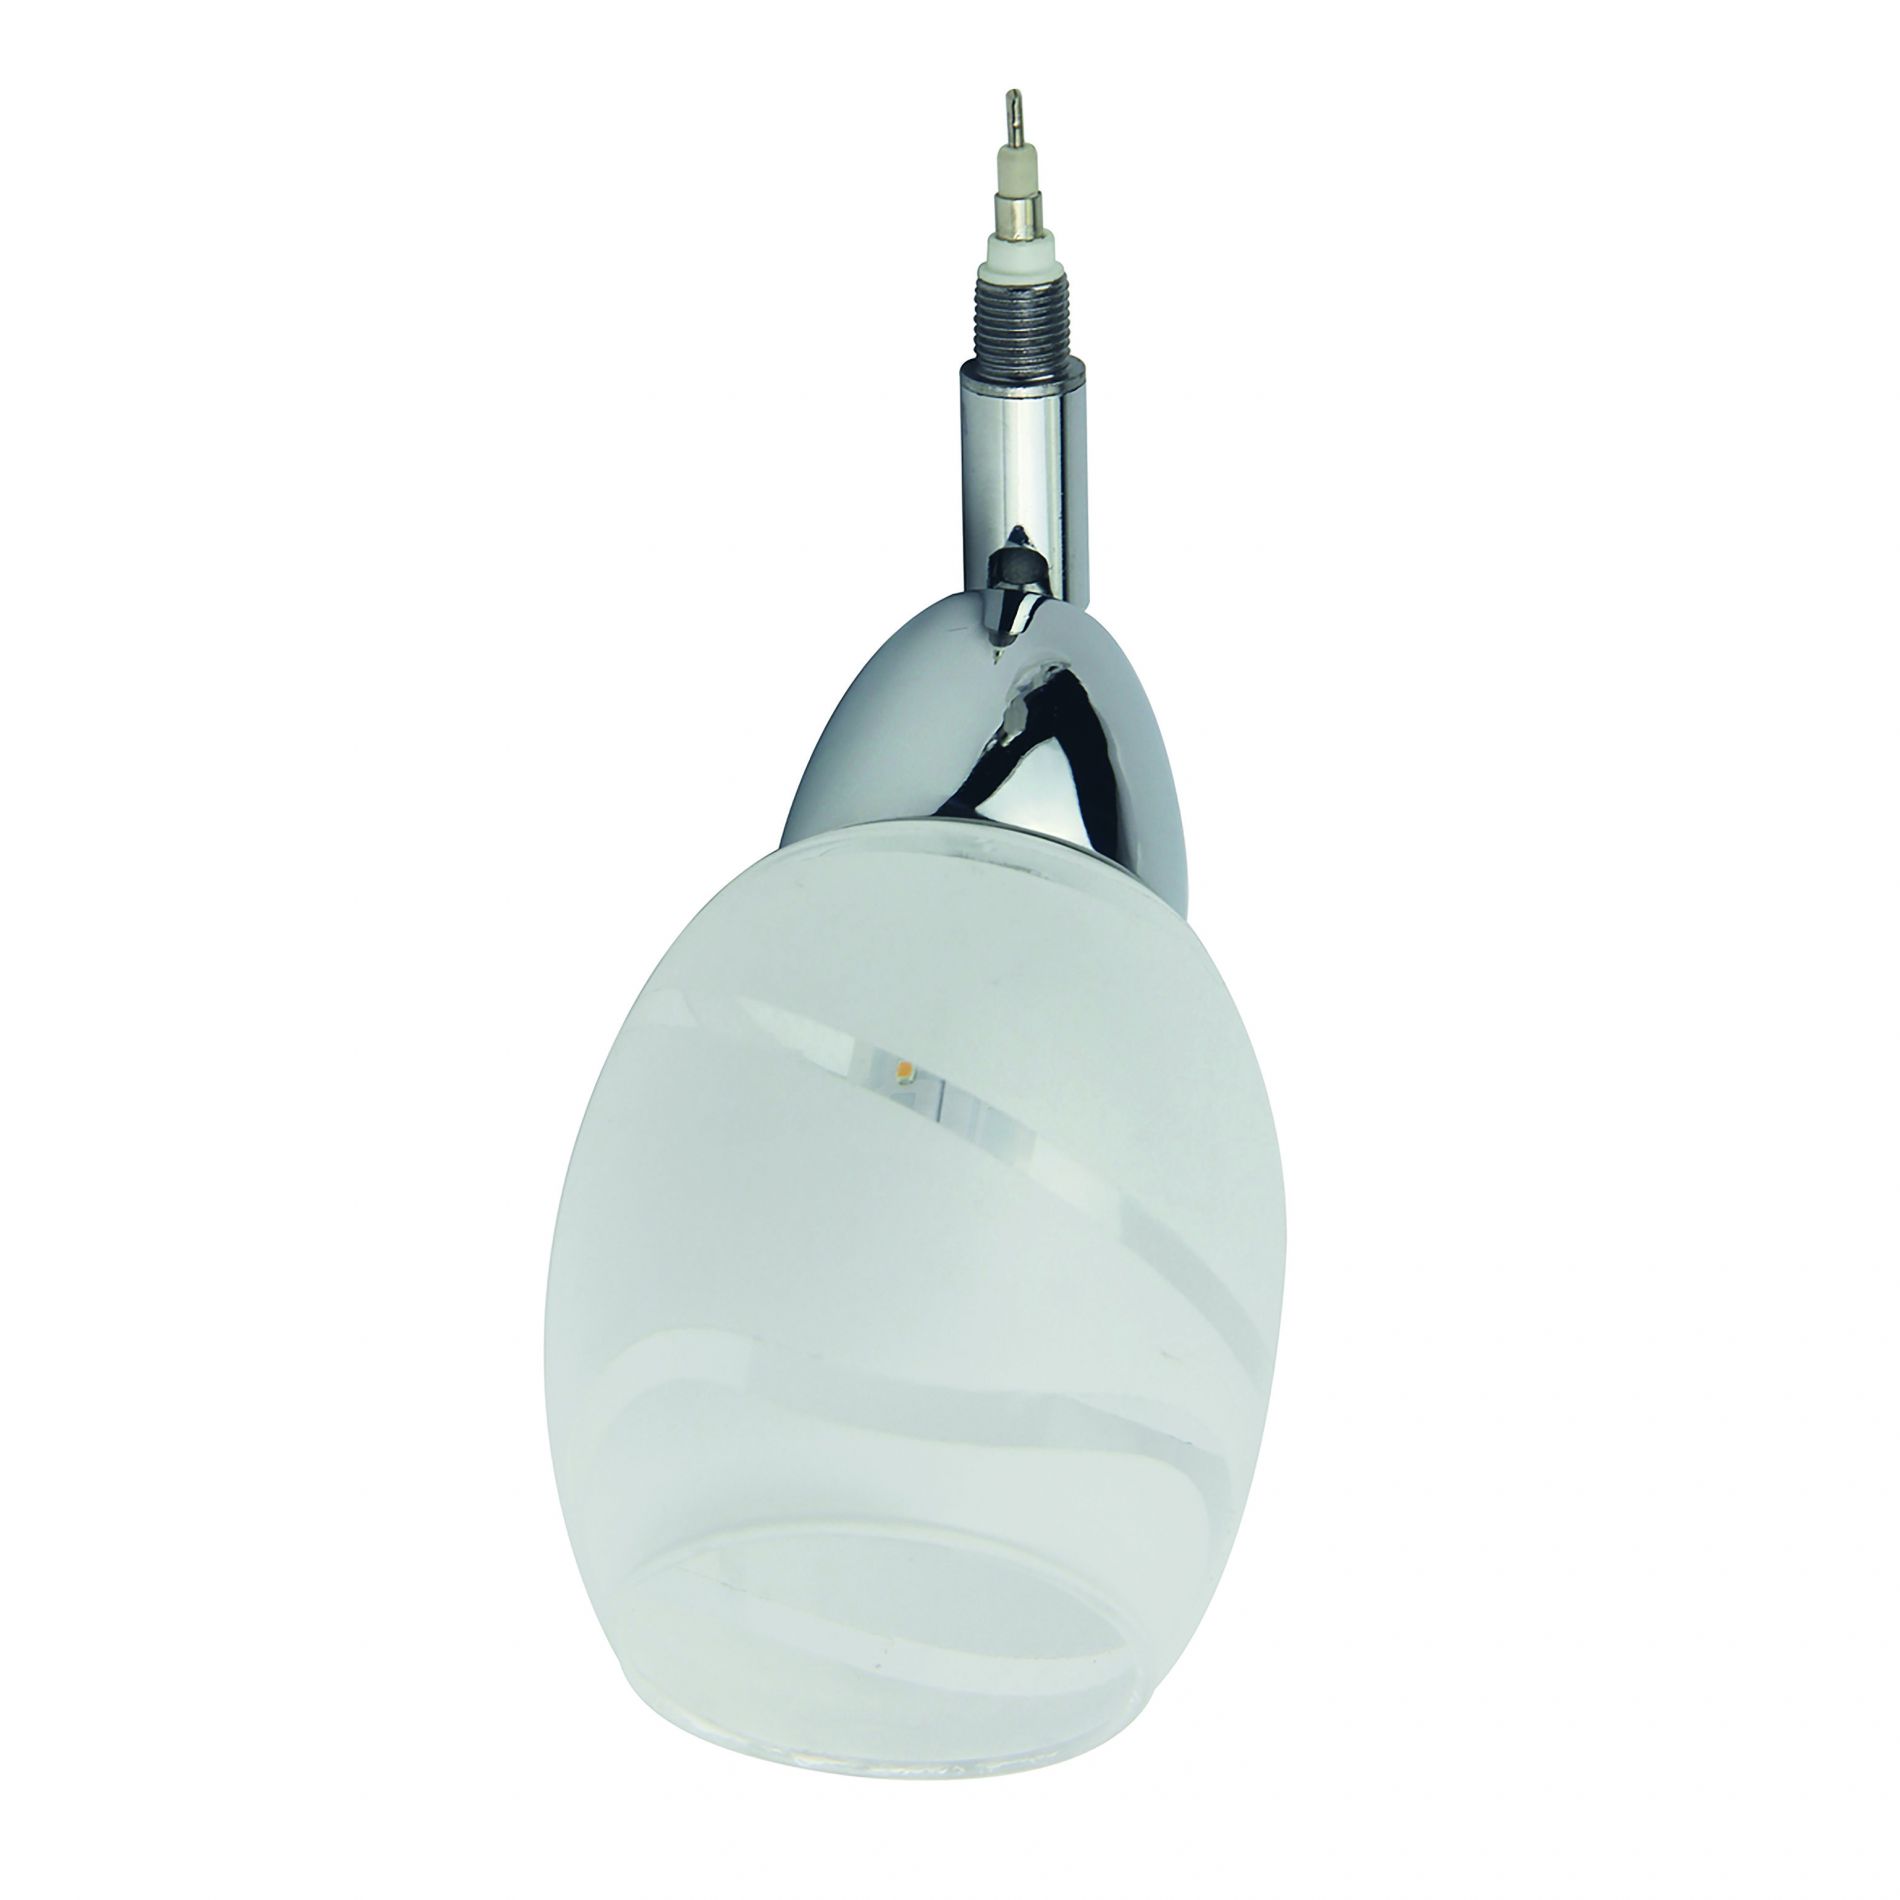 Diffuseur orientable LED globe REMIXLED argenté/blanc en métal/verre